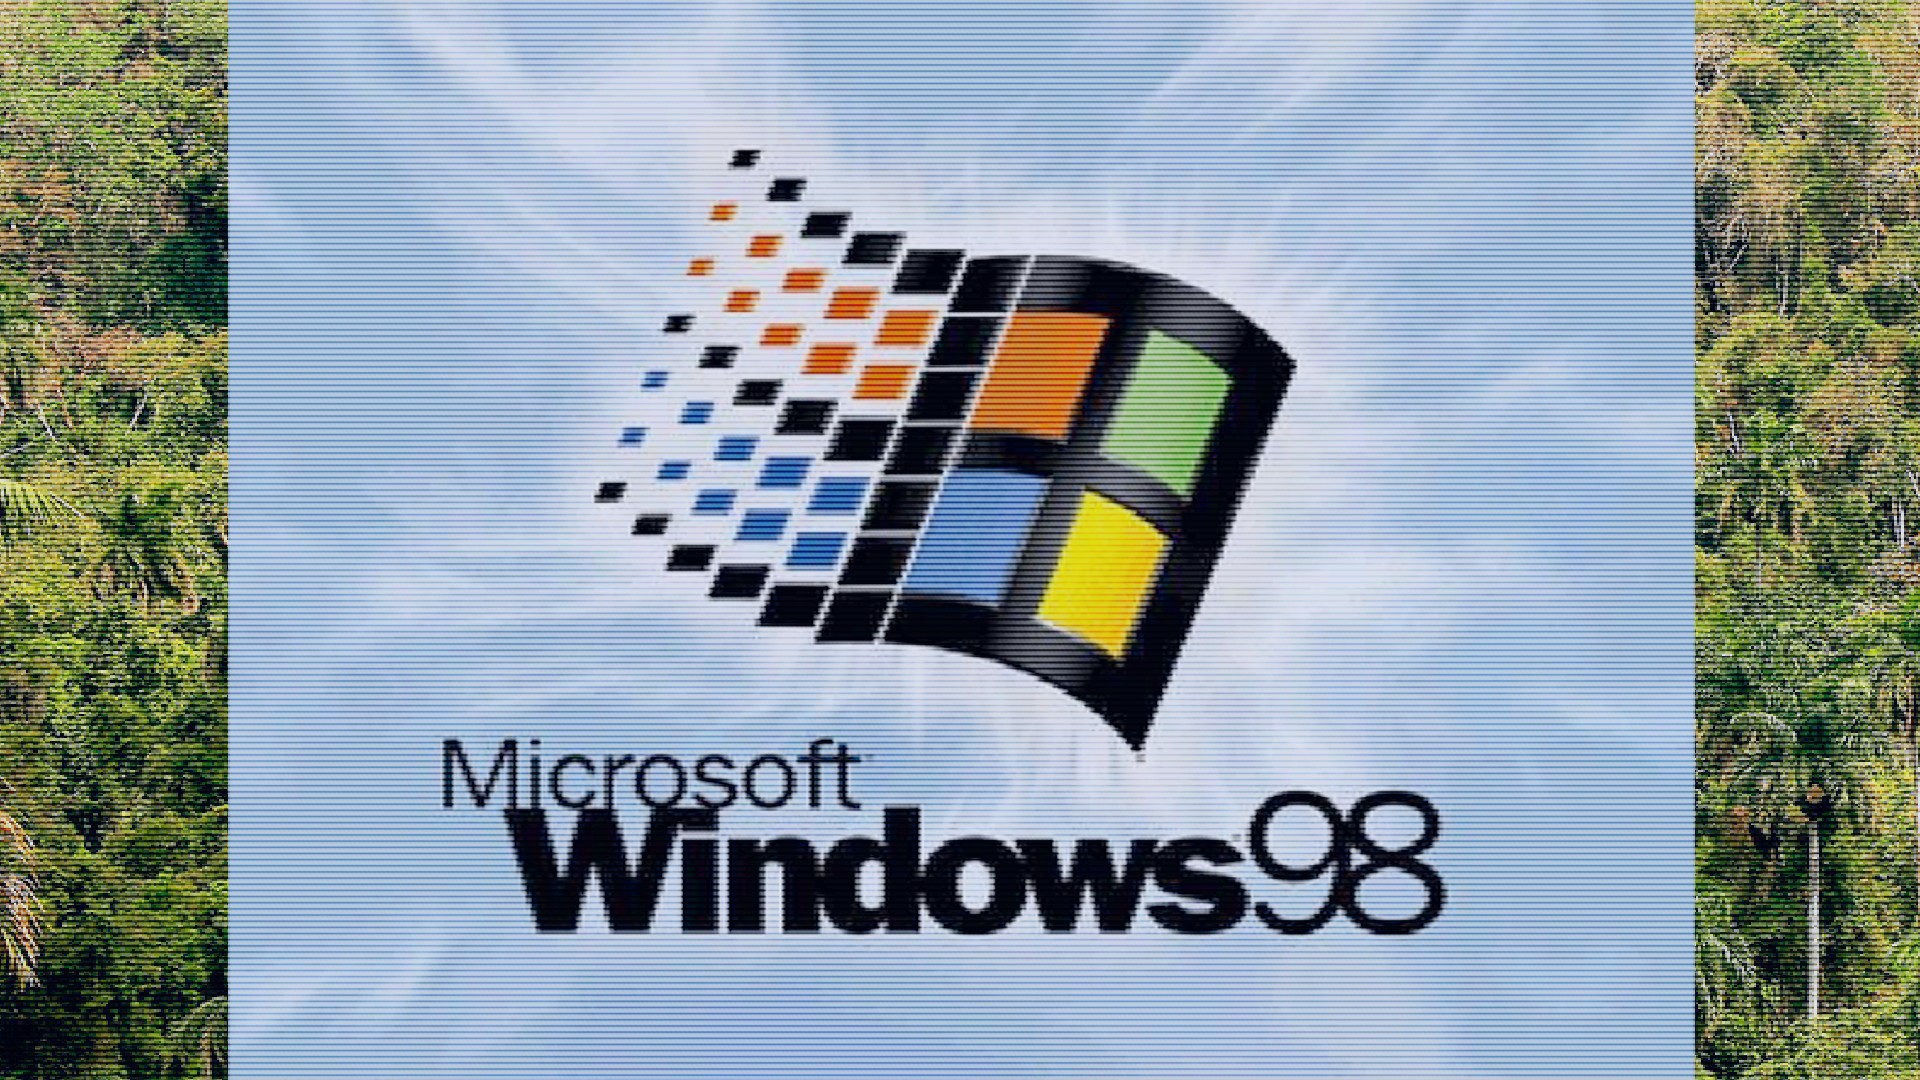 1920x1080 Windows 98 Wallpaper (1920 x 1080) ...